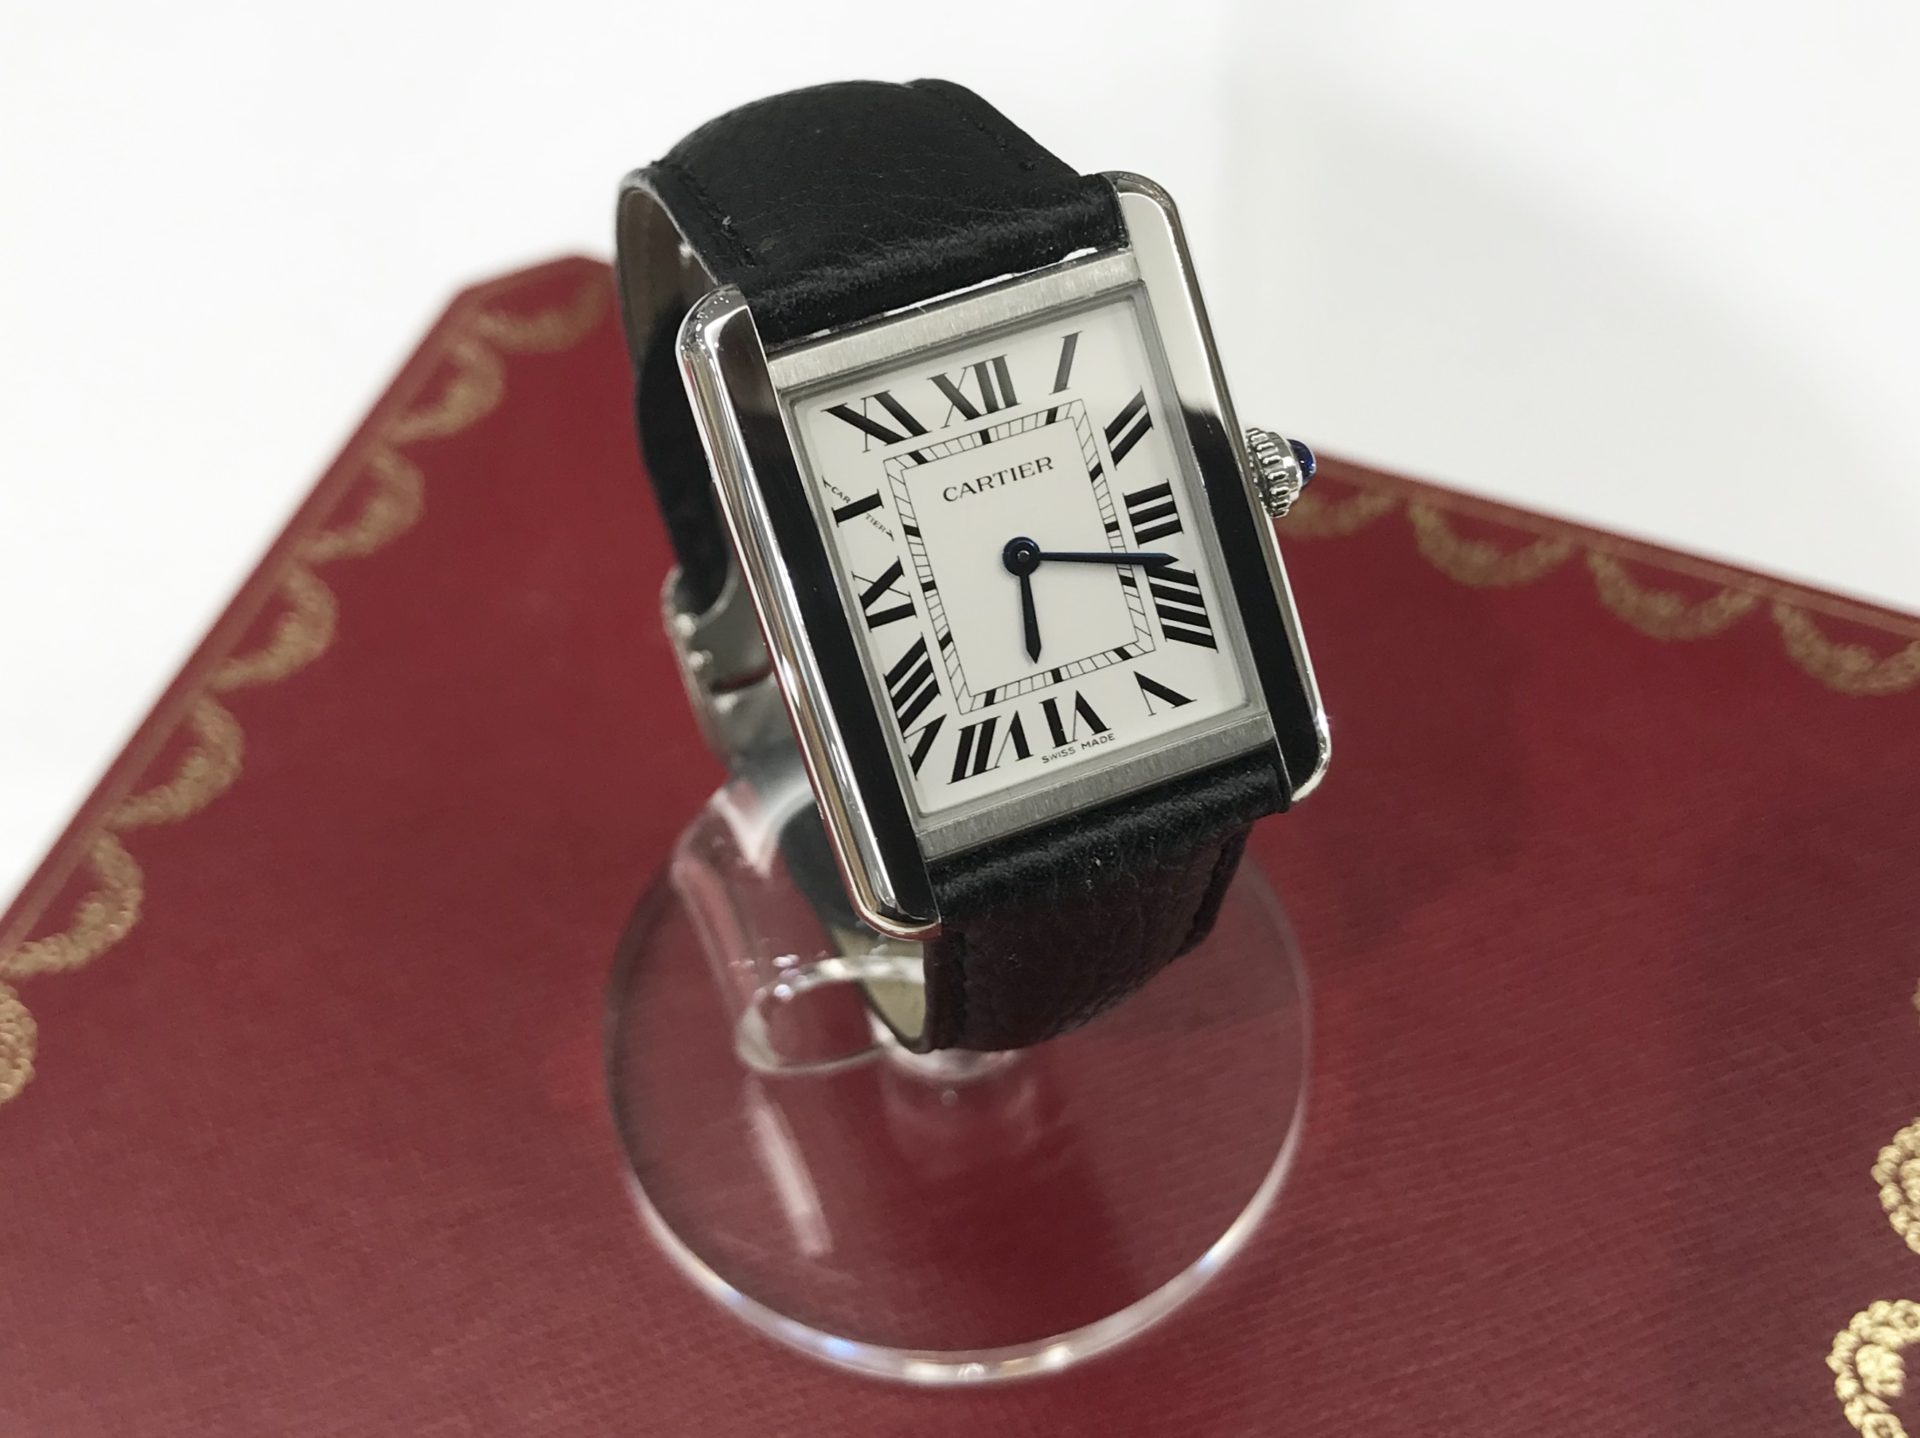 人気質屋ブログ Cartier カルティエから タンク ソロ ウォッチ Wsta0030 入荷しました ブランド腕時計買取します キャッスレス還元対応店舗 質屋かんてい局 前橋店 質屋かんてい局前橋店